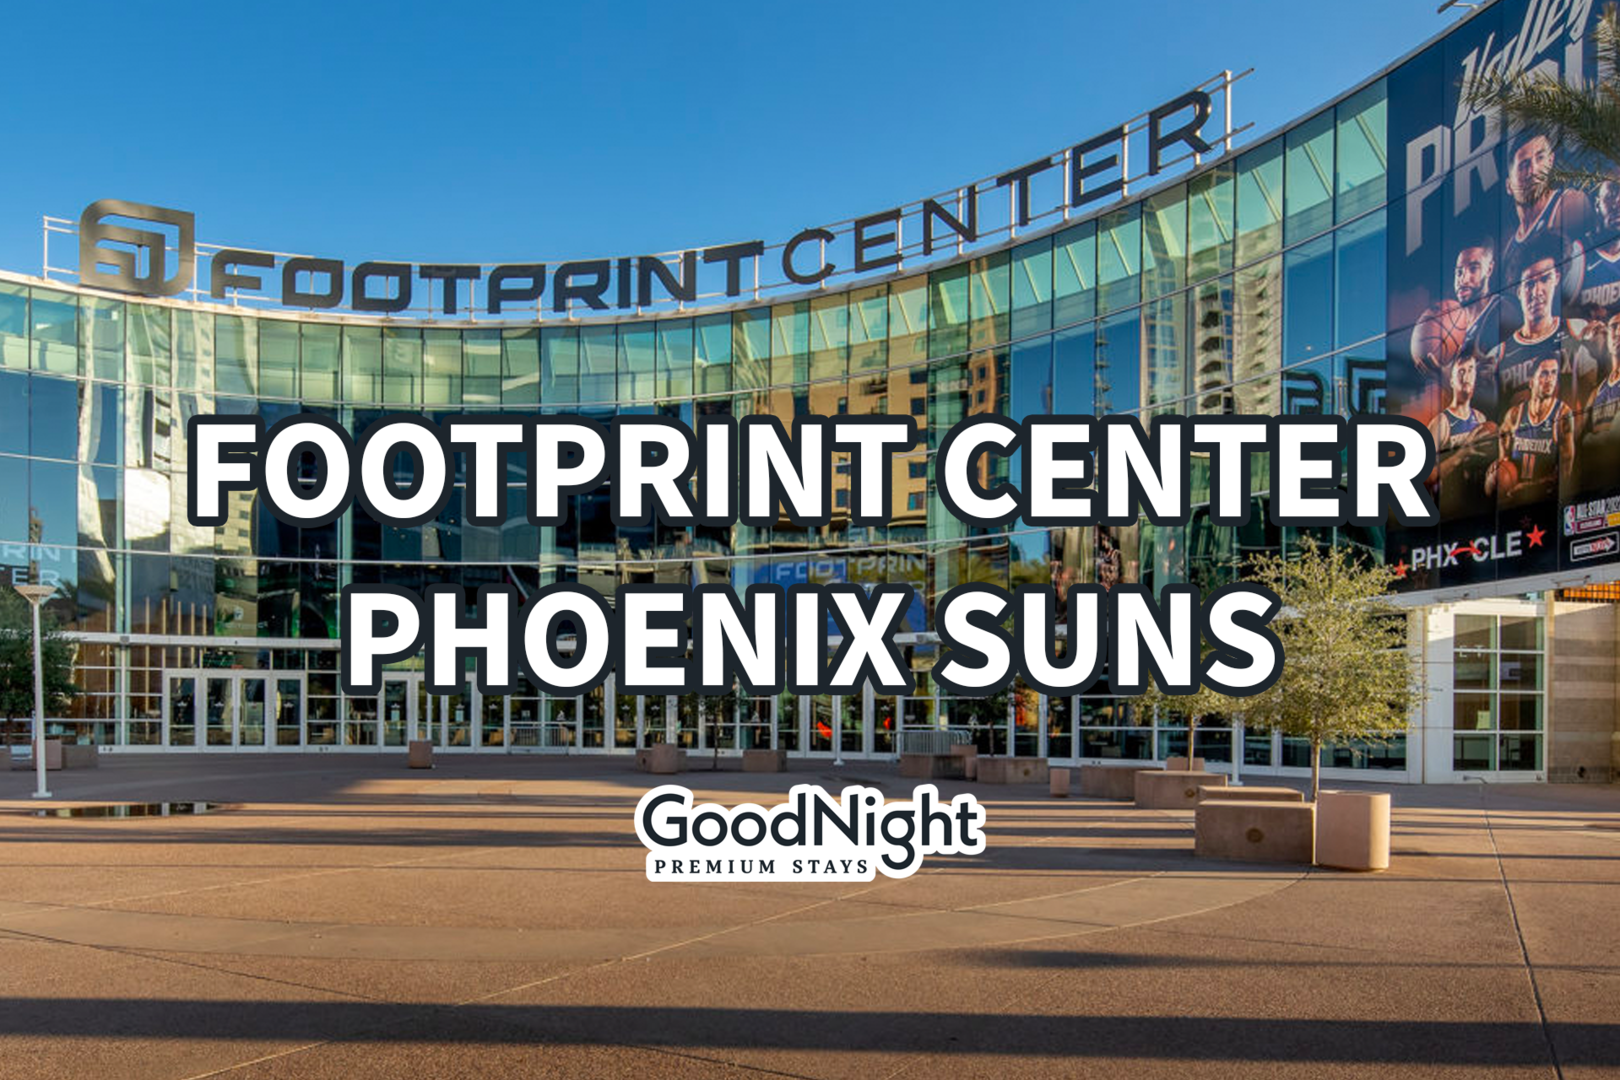 Footprint Center - Phoenix Suns: 18 mins